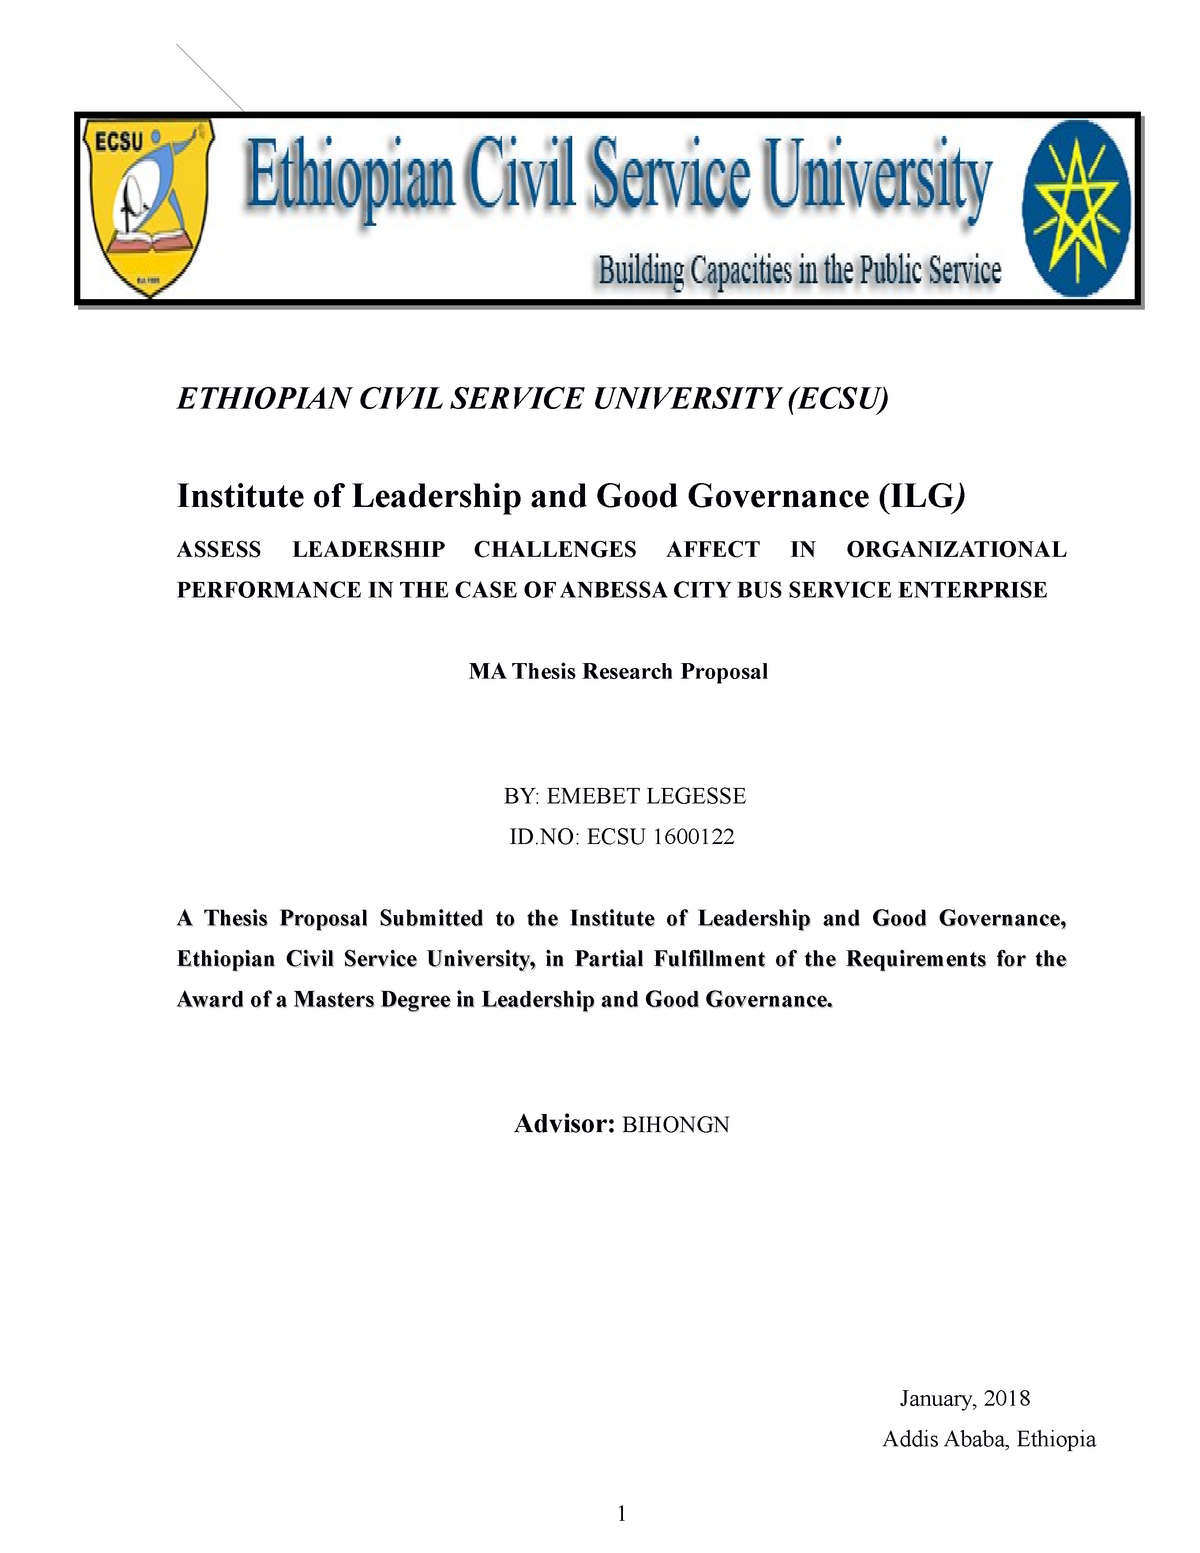 csr phd thesis pdf